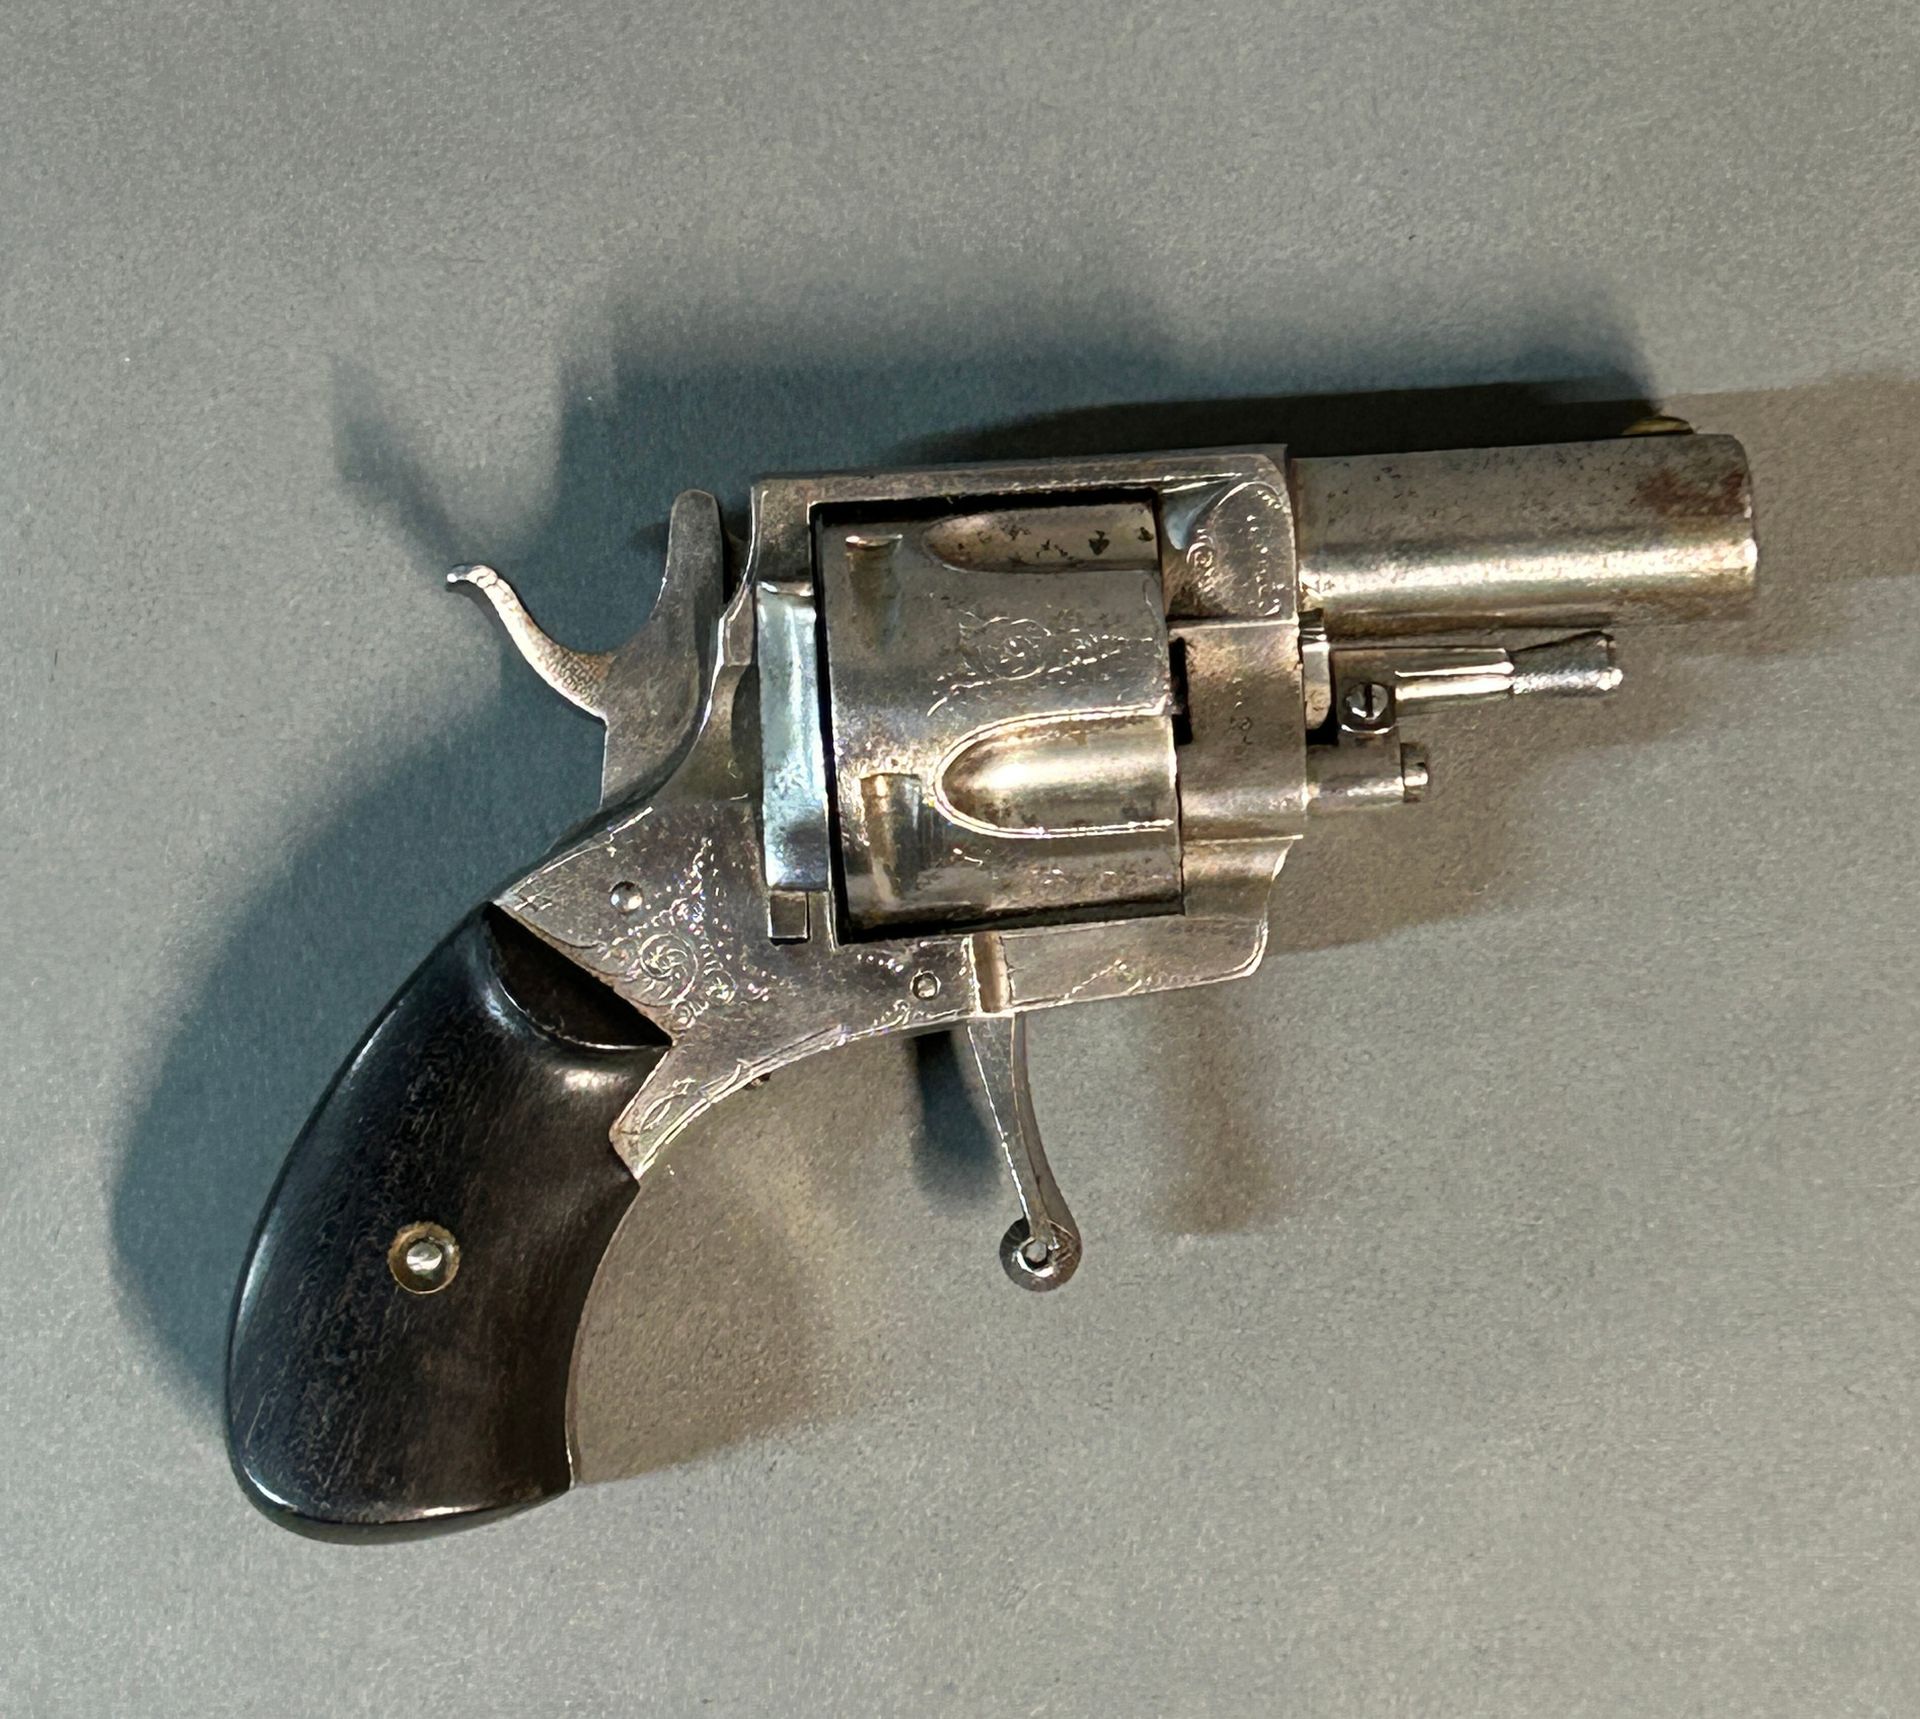 Null Revolver vom Typ Bulldog.

5 Schuss Zentralfeuer.

Wird durch die Tür gelad&hellip;